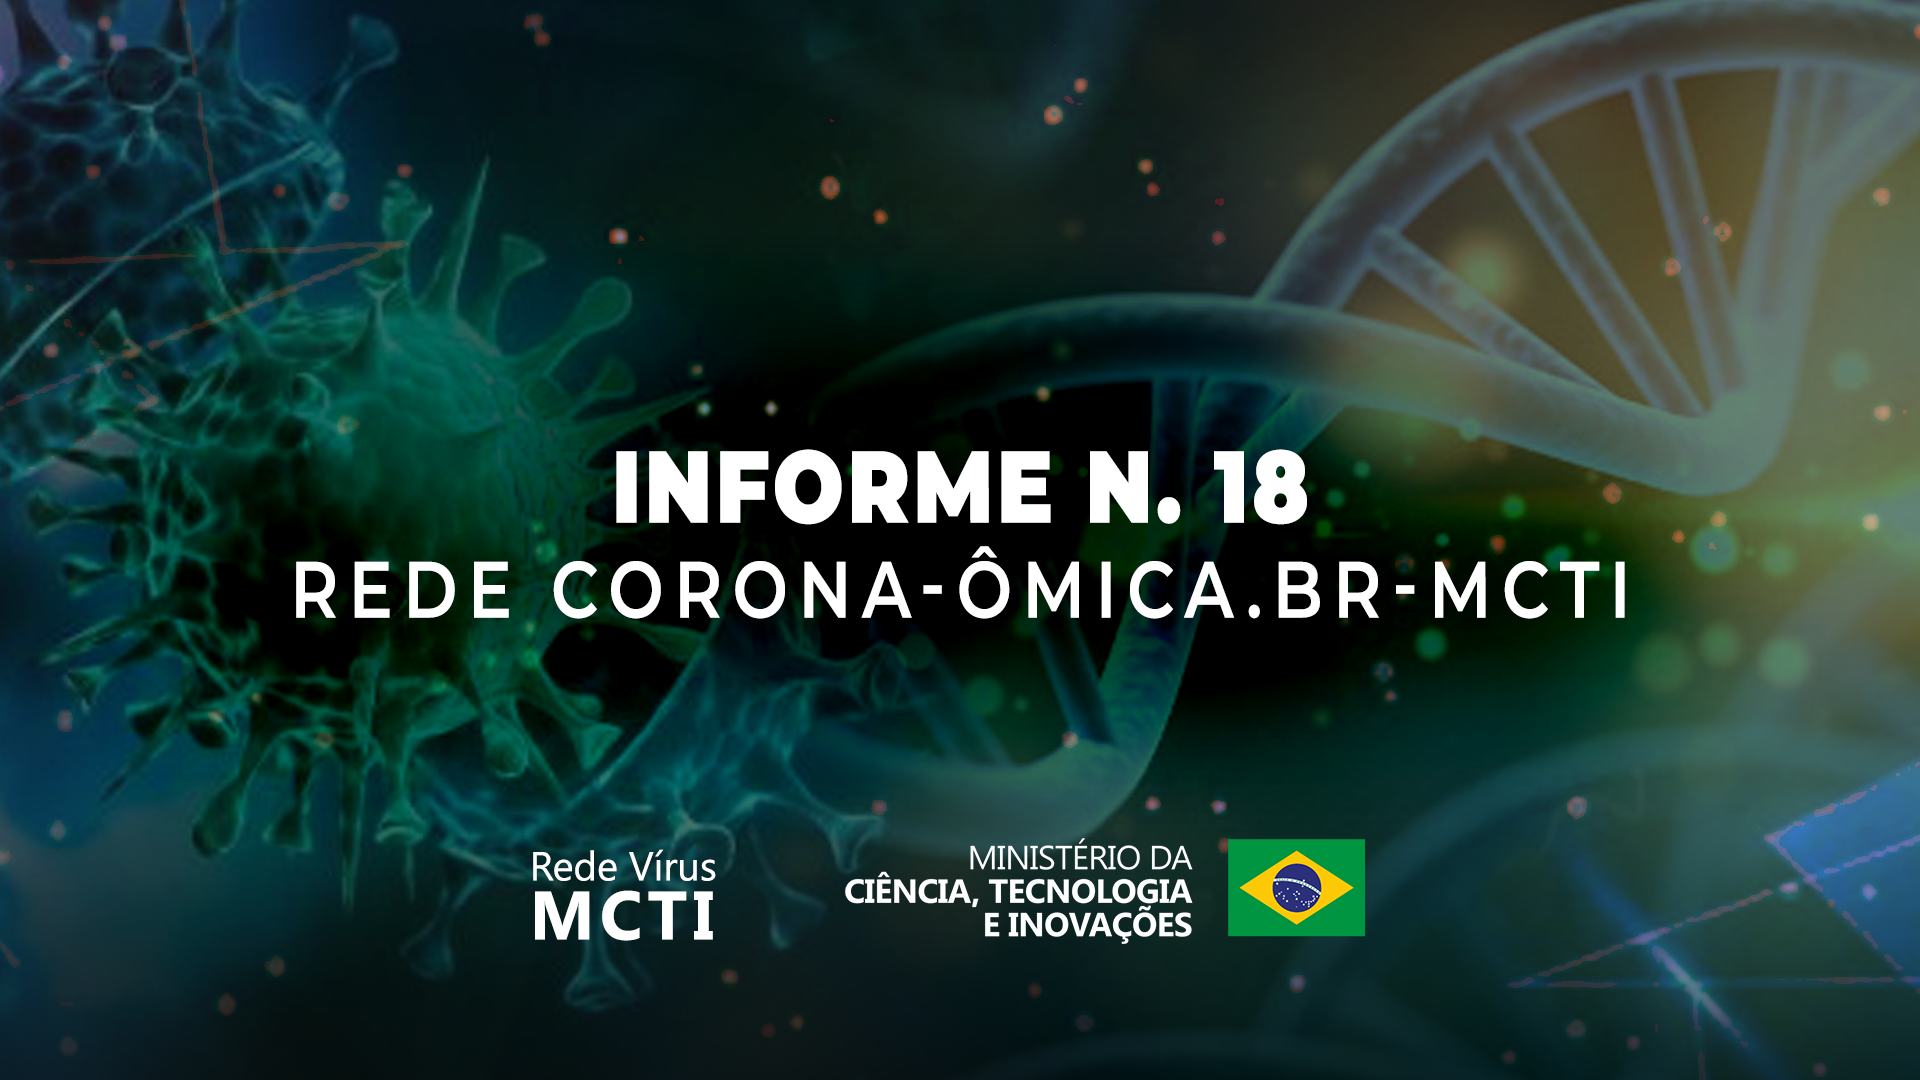 Rede Corona-omica-MCTI conclui estudo que analisou a estimativa da frequência de variantes de SARS-CoV-2 no estado de Minas Gerais